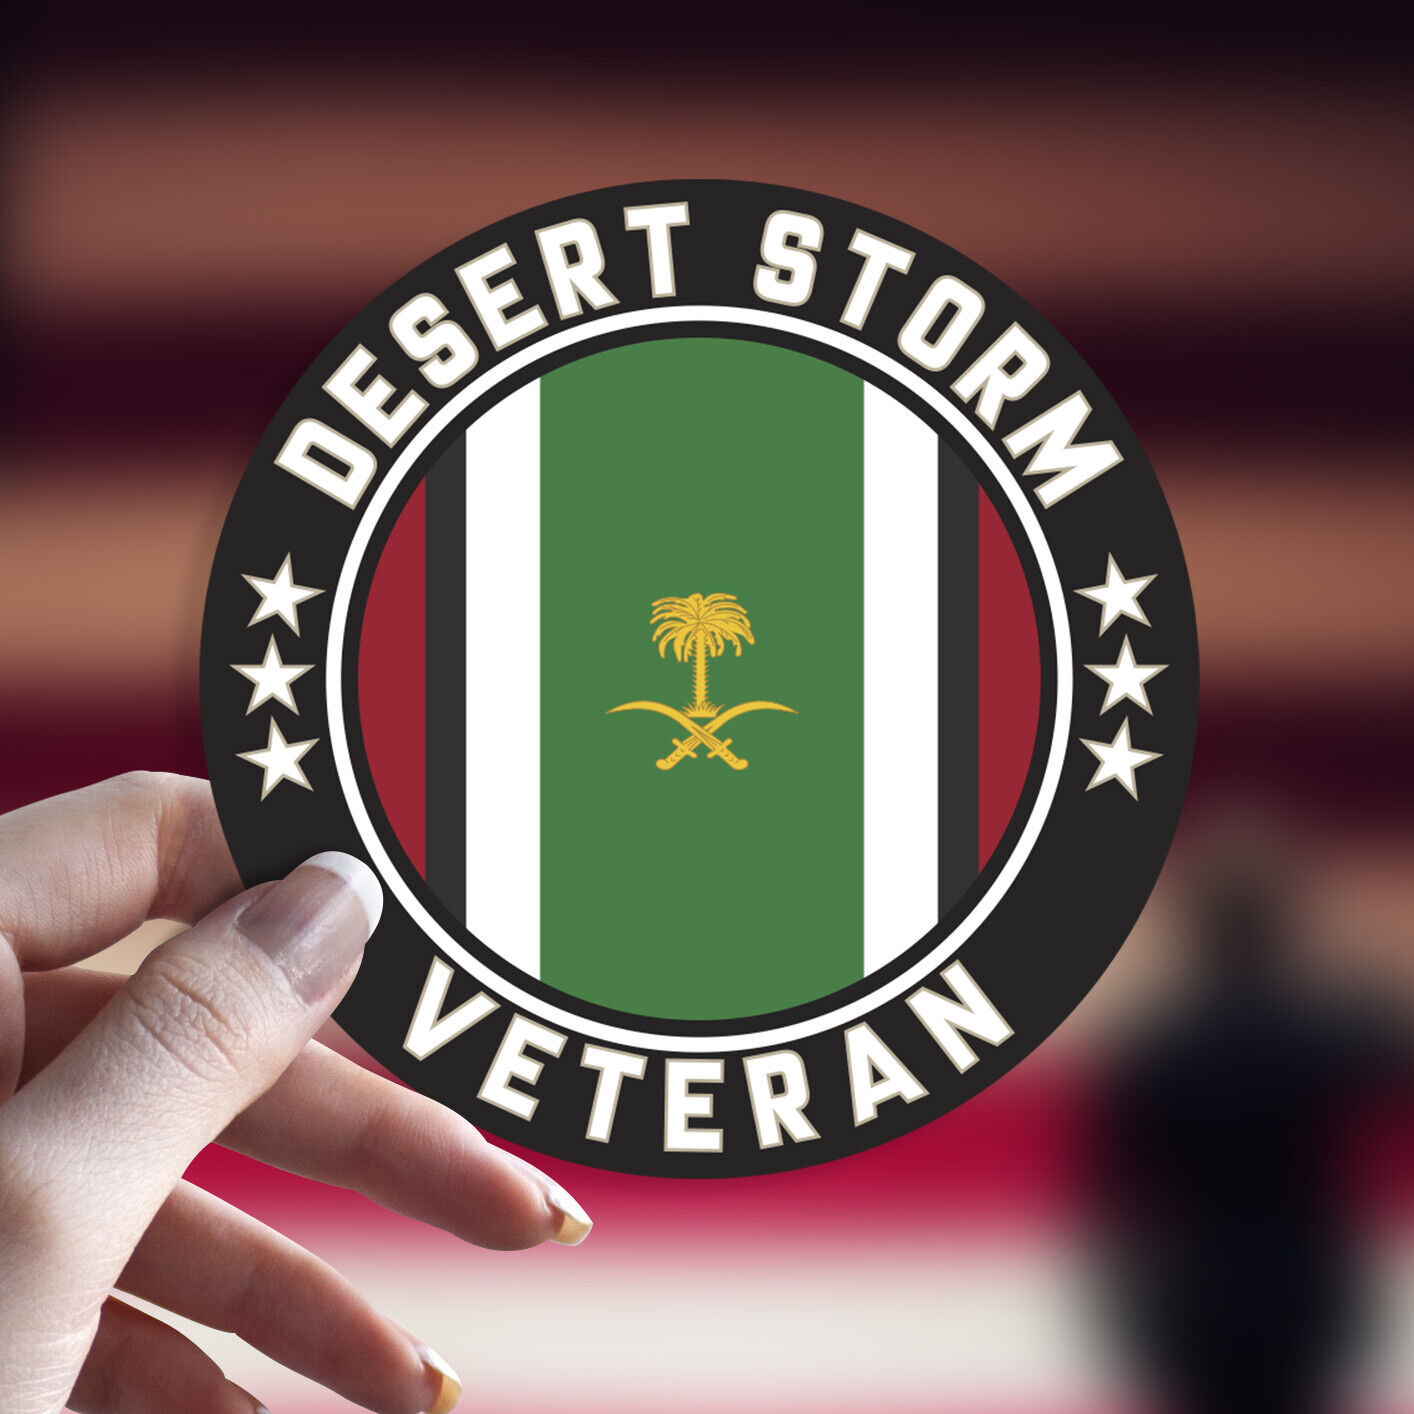 Desert Storm Veteran Decal/Sticker Car Window Round Die Cut